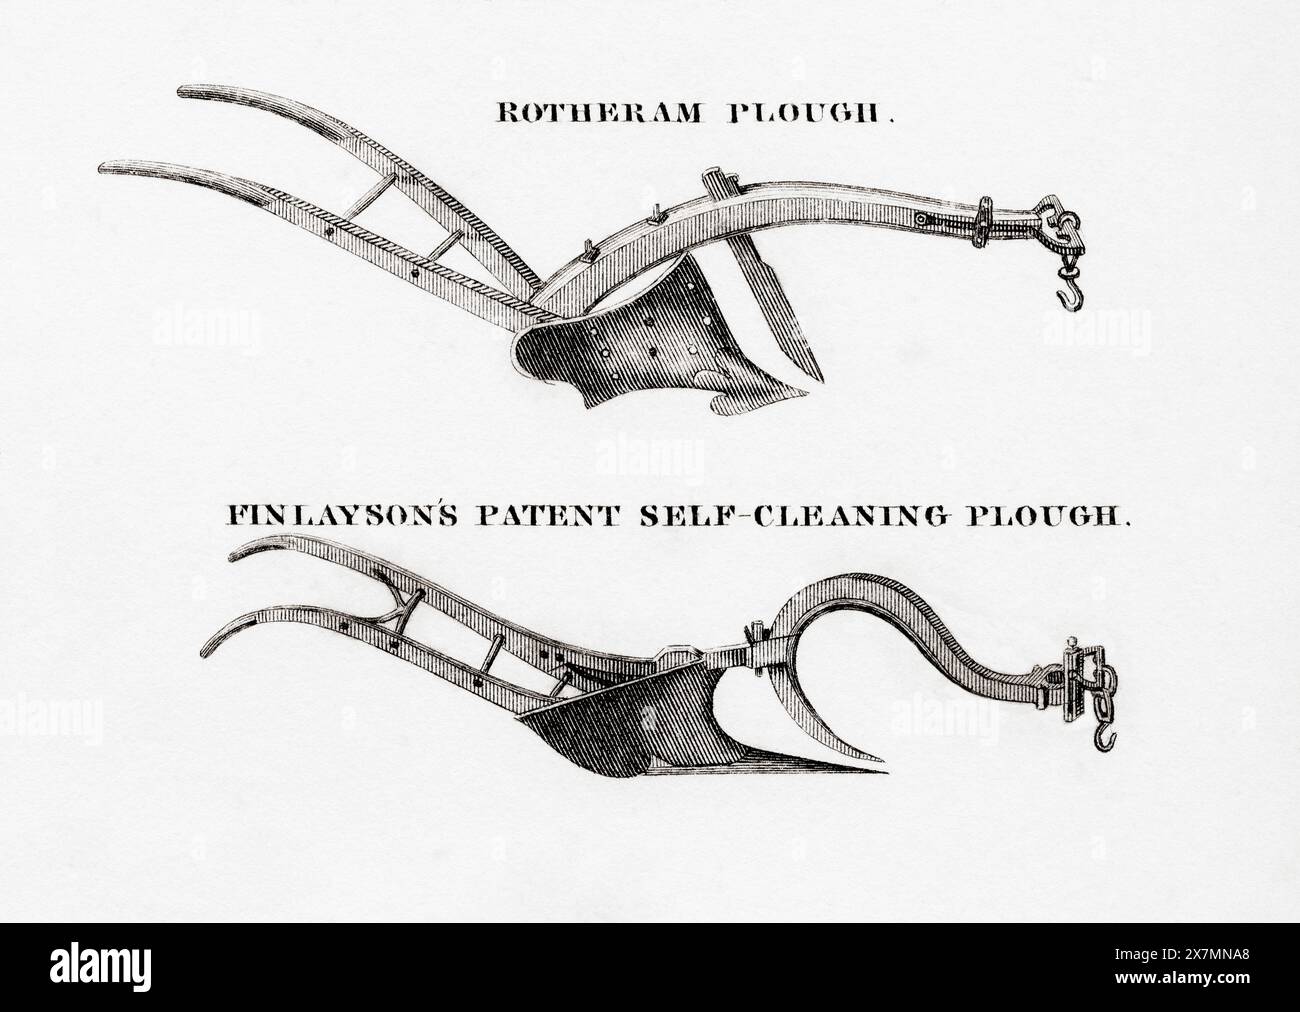 Due tipi di aratro. Top, Rotheram Plough. Fondo, aratro autopulente brevettato Finlayson. Foto Stock